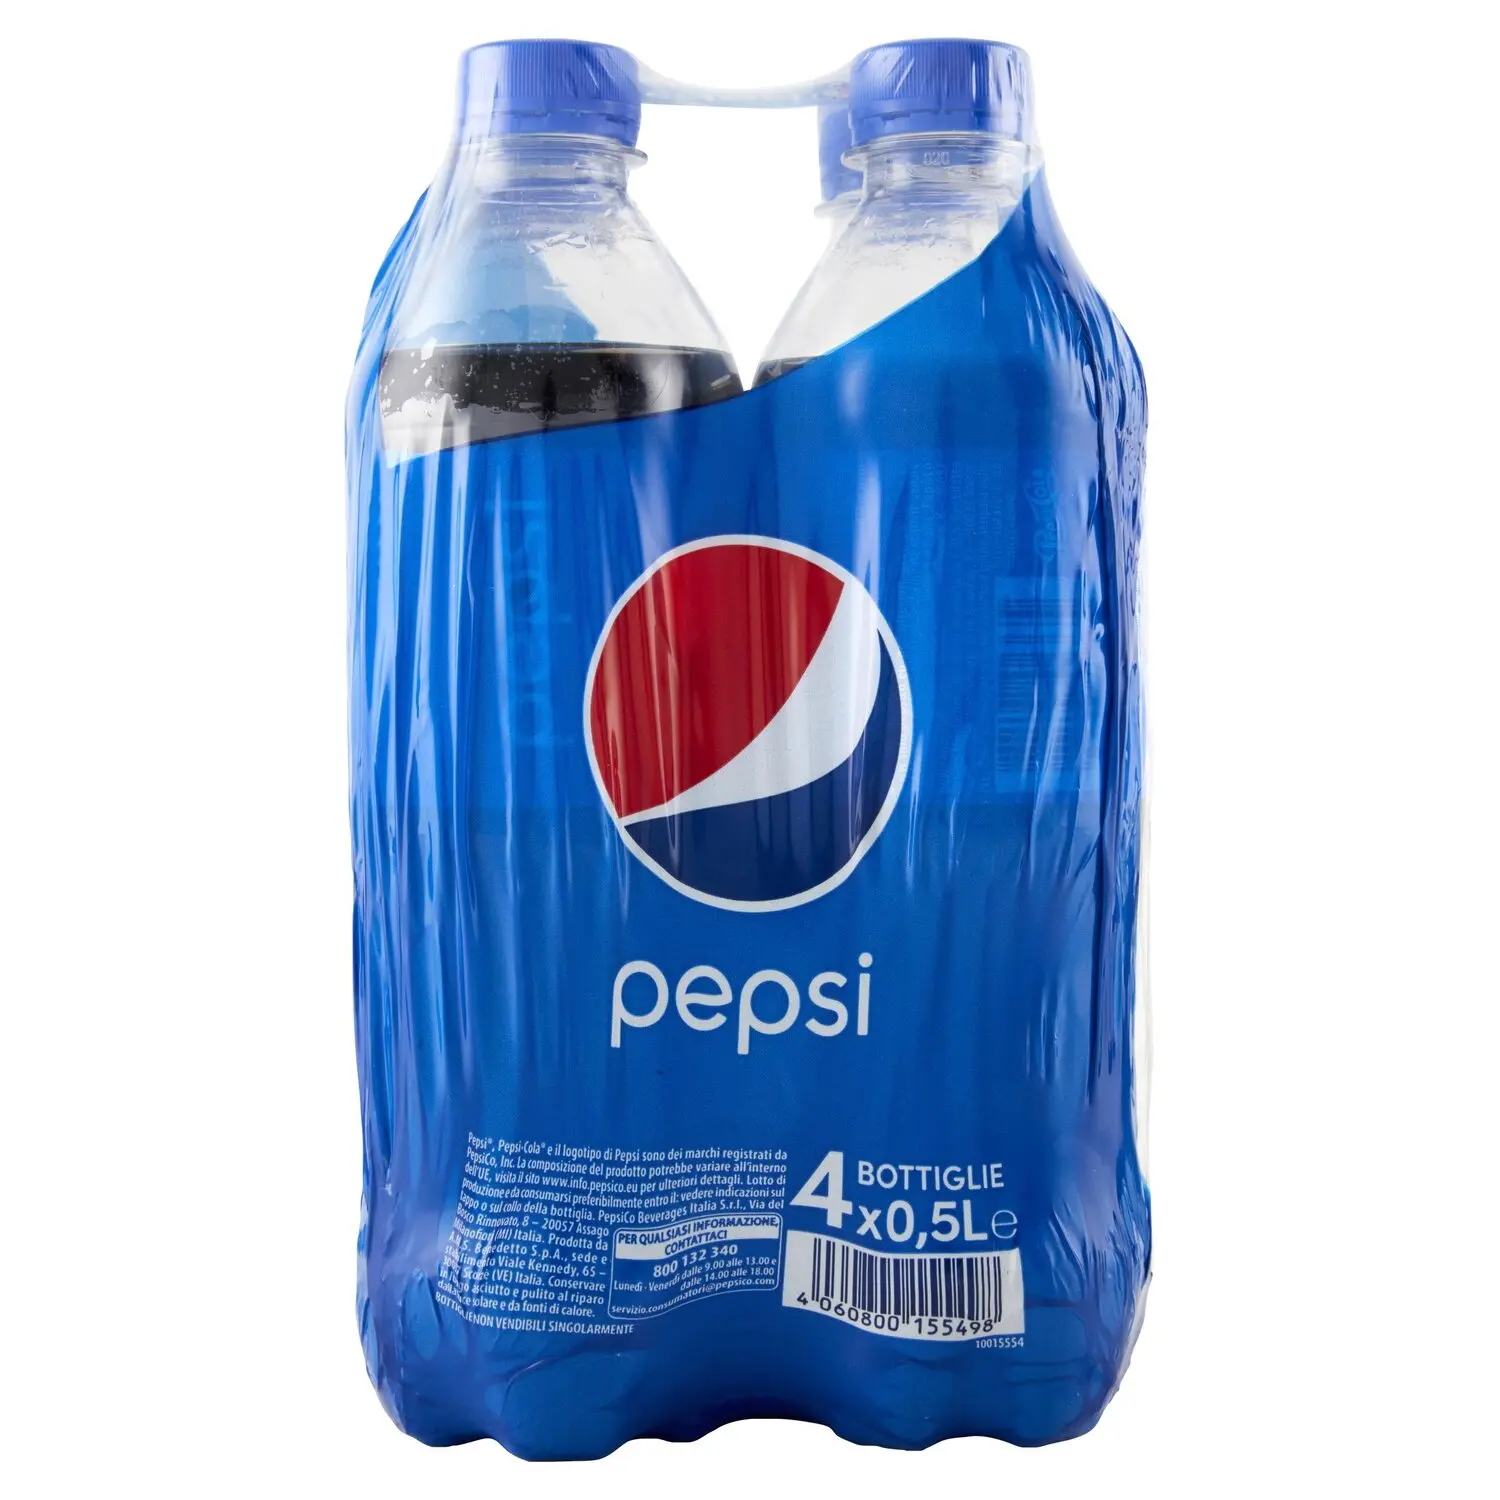 Concentrato Gusto Pepsi per Bibite Gassate